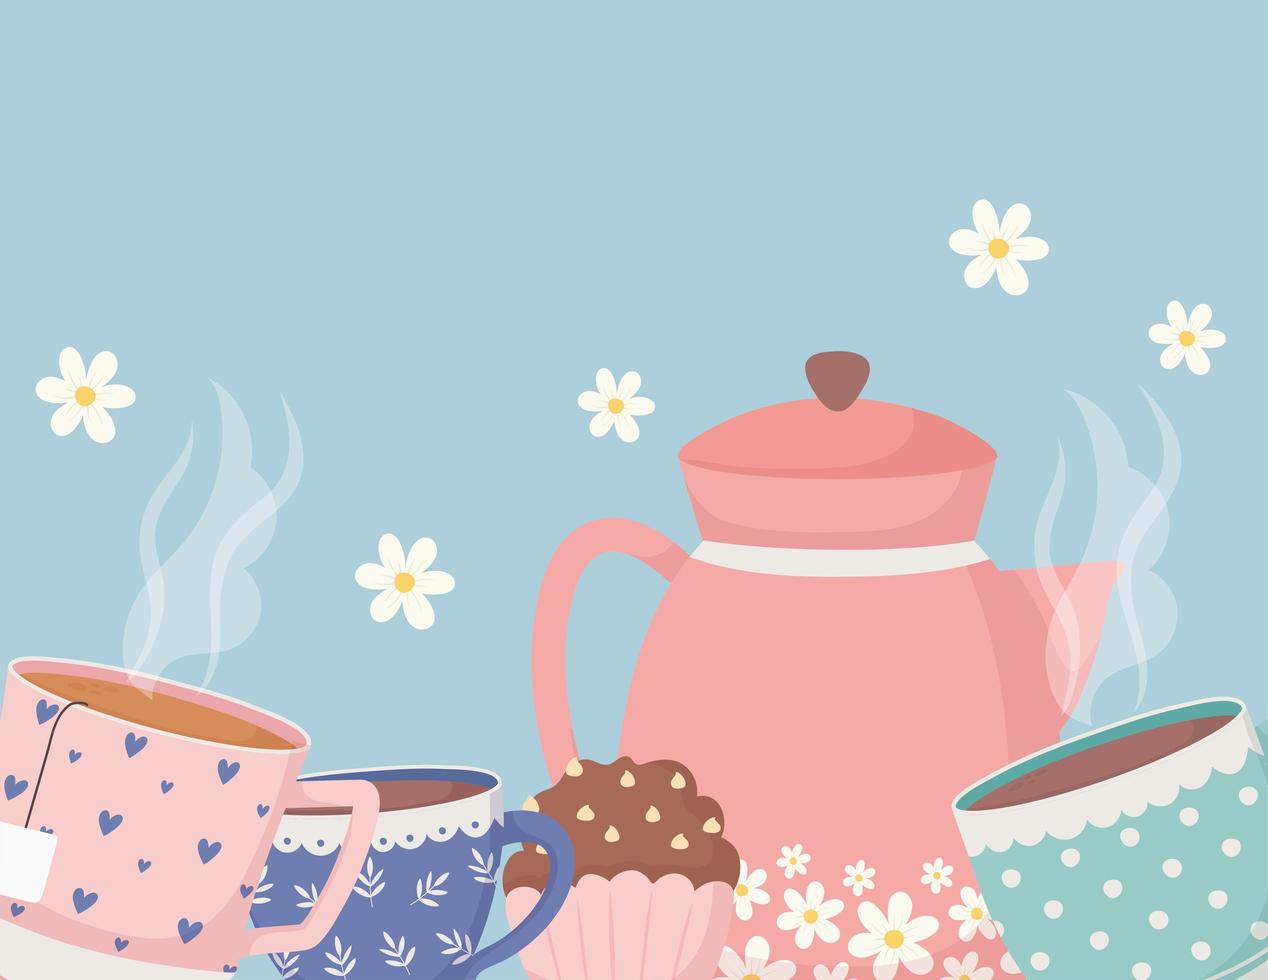 hora do café e chá, bule xícaras de cupcakes com decoração de flores vetor